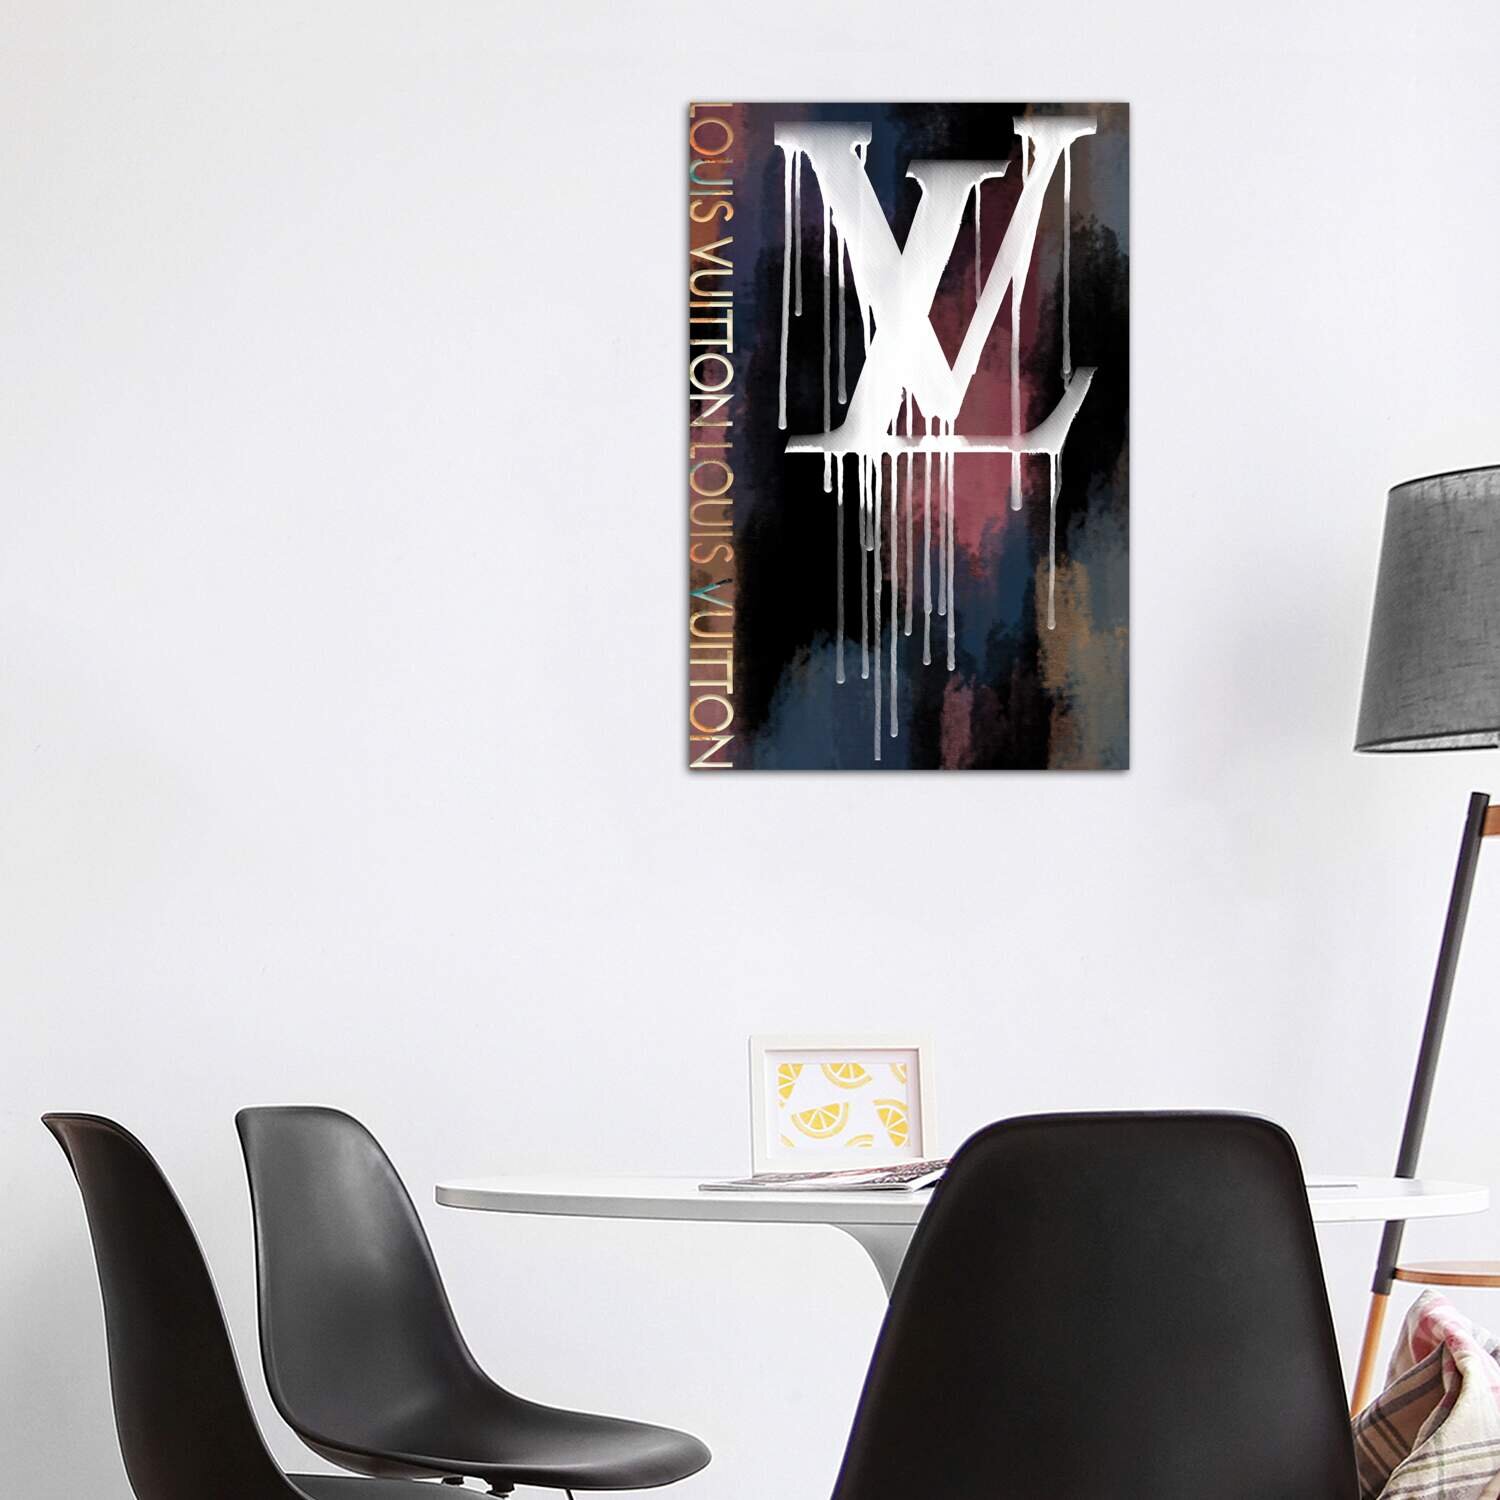 Louis Vuitton Dripping Logo Patter - Canvas Wall Art